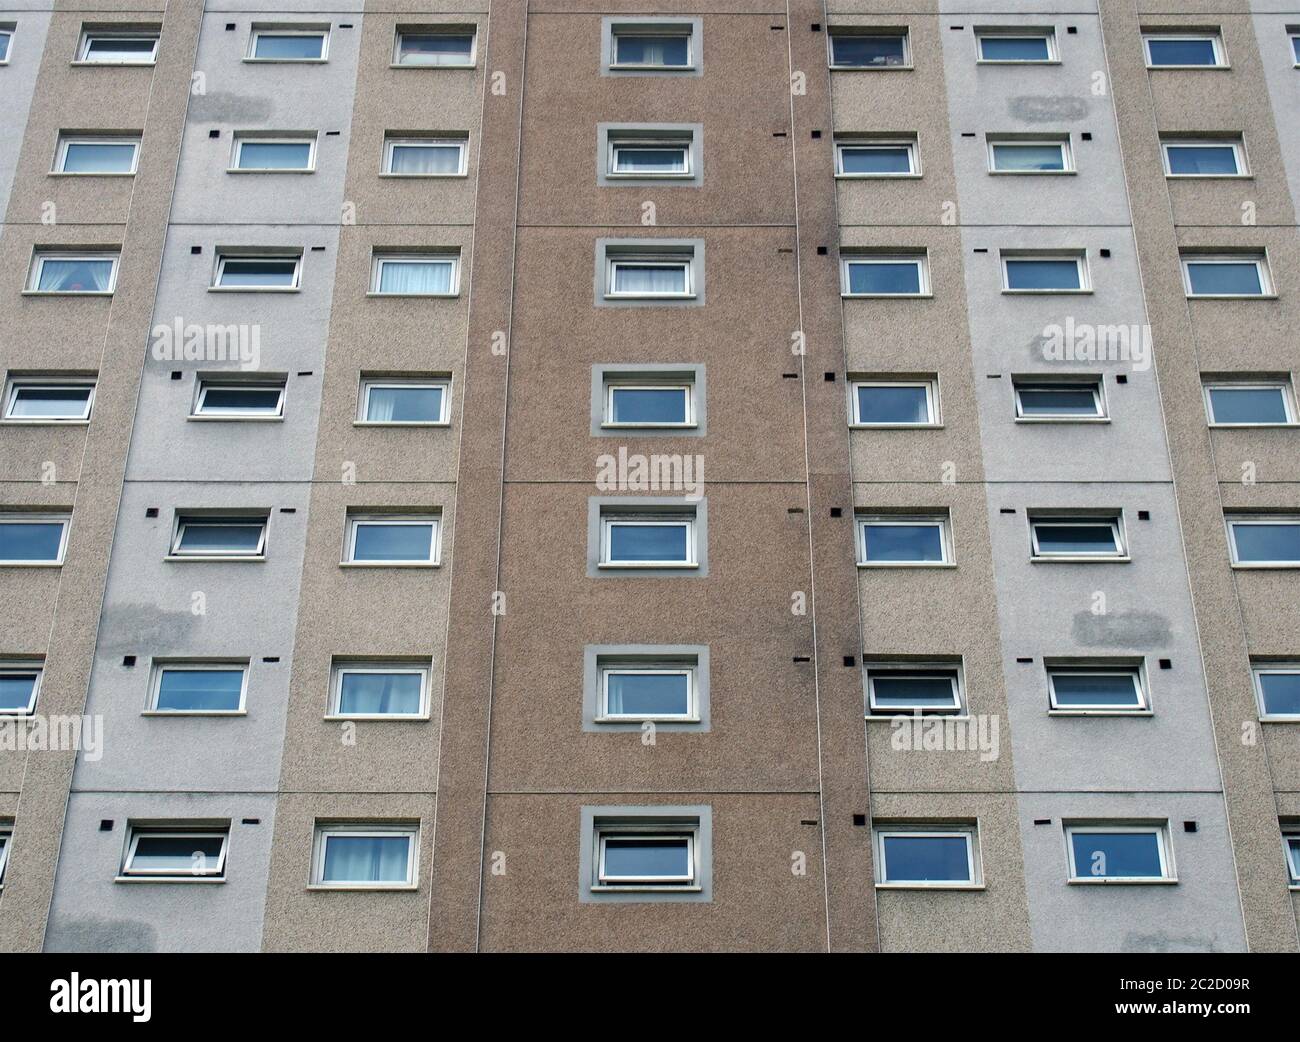 Ein Blick auf einen typischen britischen rat baute Hochhausbeton-Wohnblock, der typisch für öffentliche Wohnungen in Großbritannien ist Stockfoto